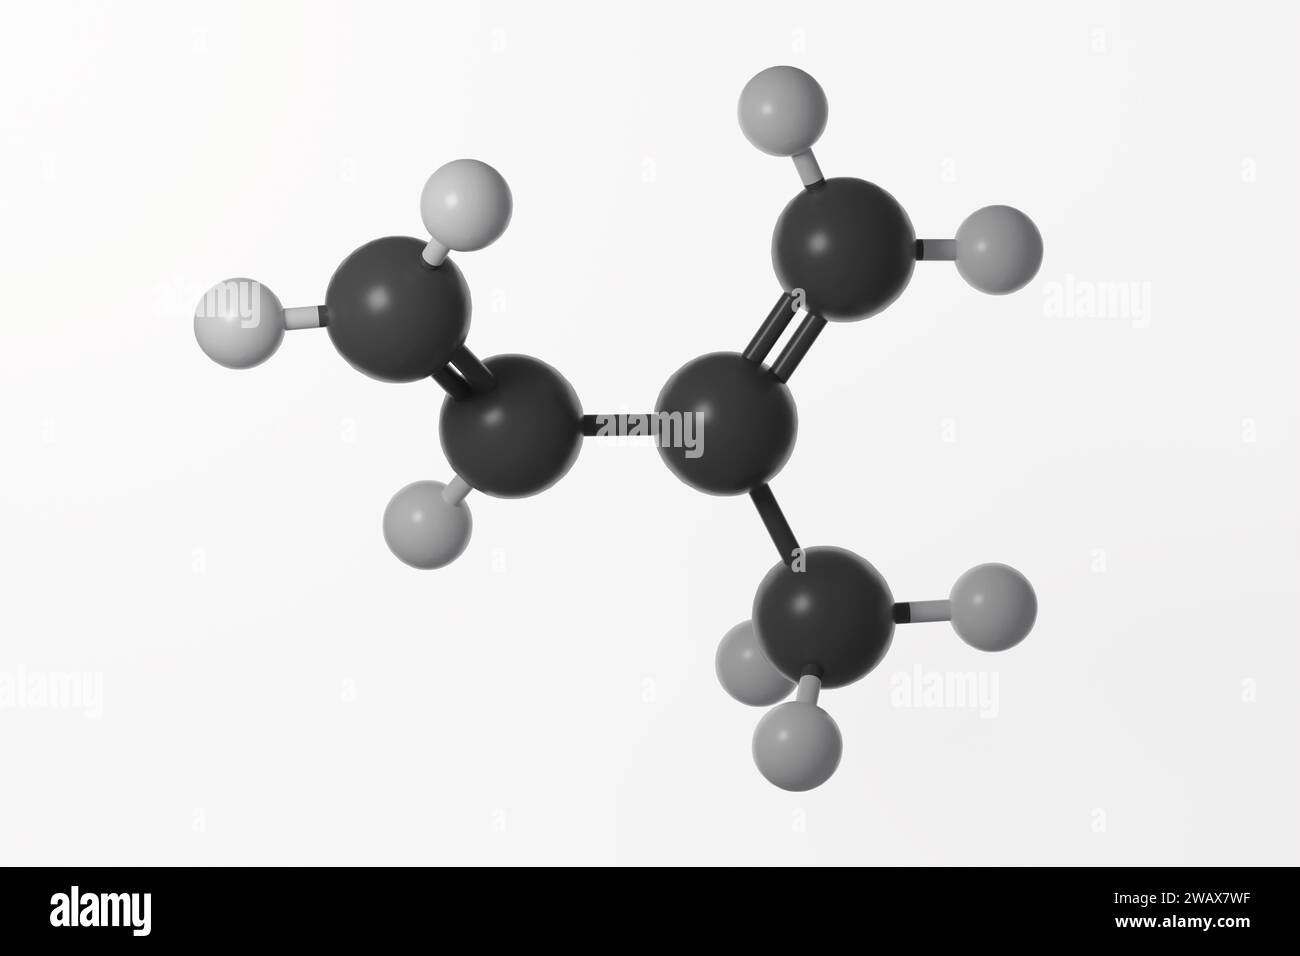 Modèle bille et bâton de molécule d'isoprène avec doubles liaisons montré, sur fond blanc Banque D'Images